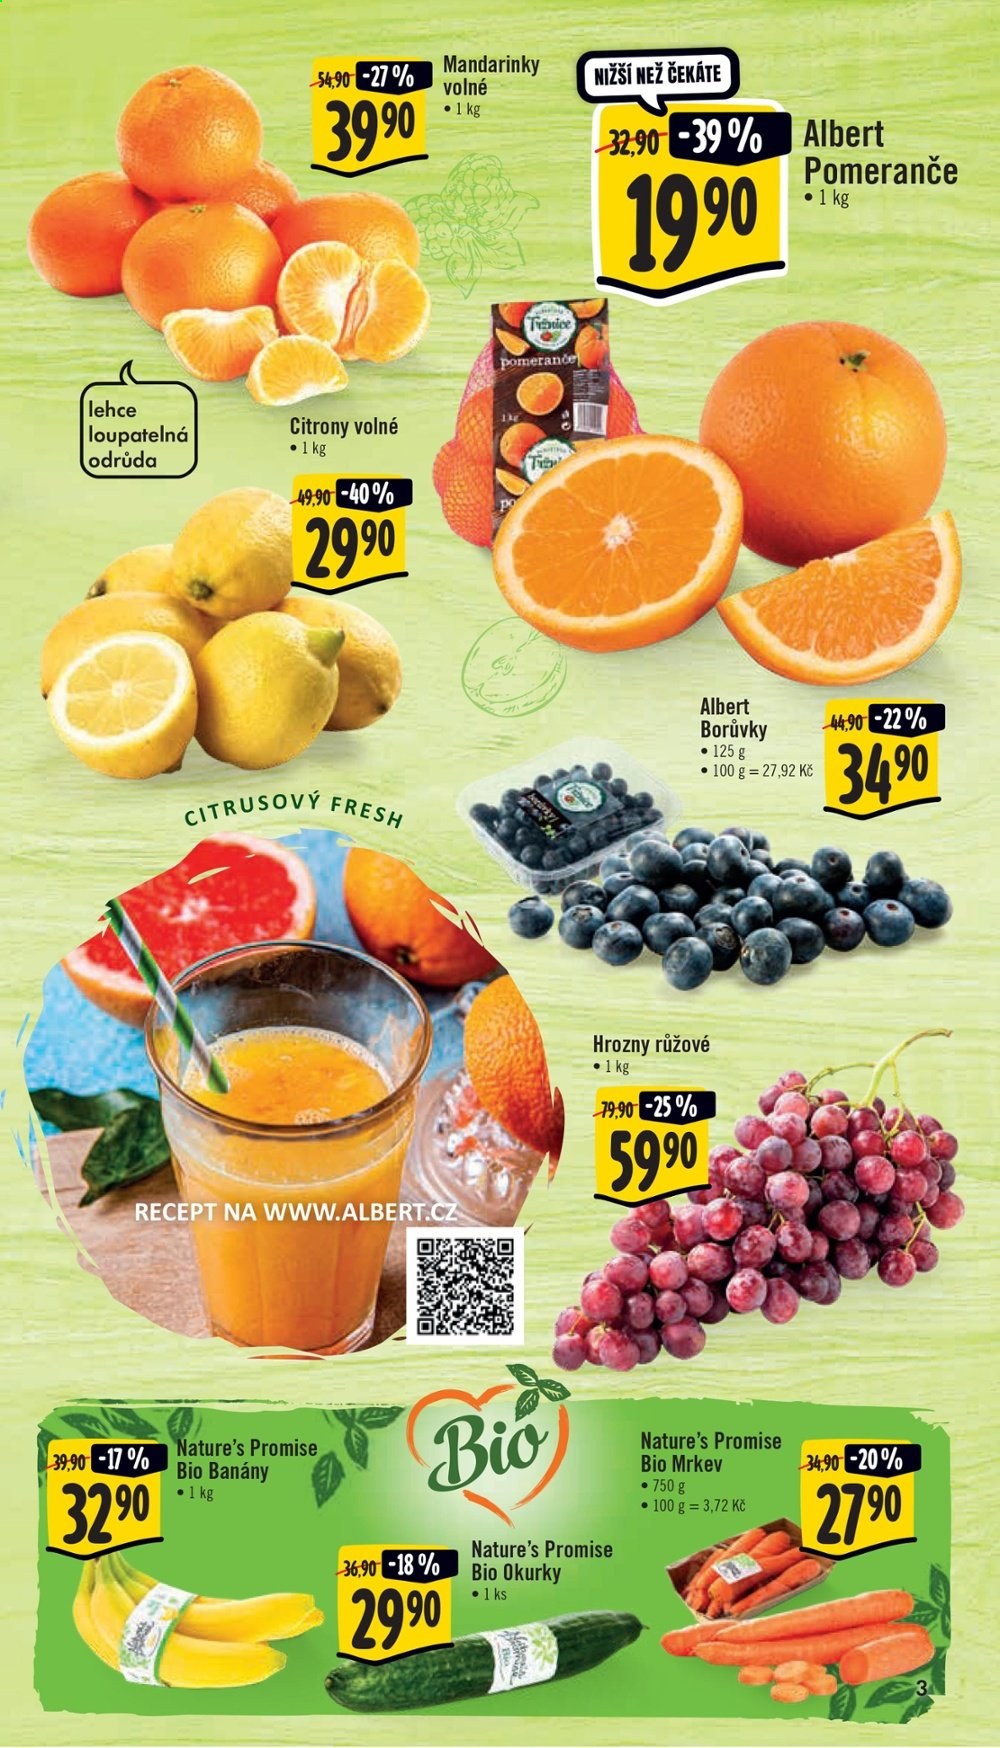 thumbnail - Leták Albert Supermarket - 24.2.2021 - 2.3.2021 - Produkty v akci - salátová okurka, mrkev, banány, citróny, mandarinky, hrozny, borůvky, pomeranče, Nature's Promise, kyselé okurky. Strana 3.